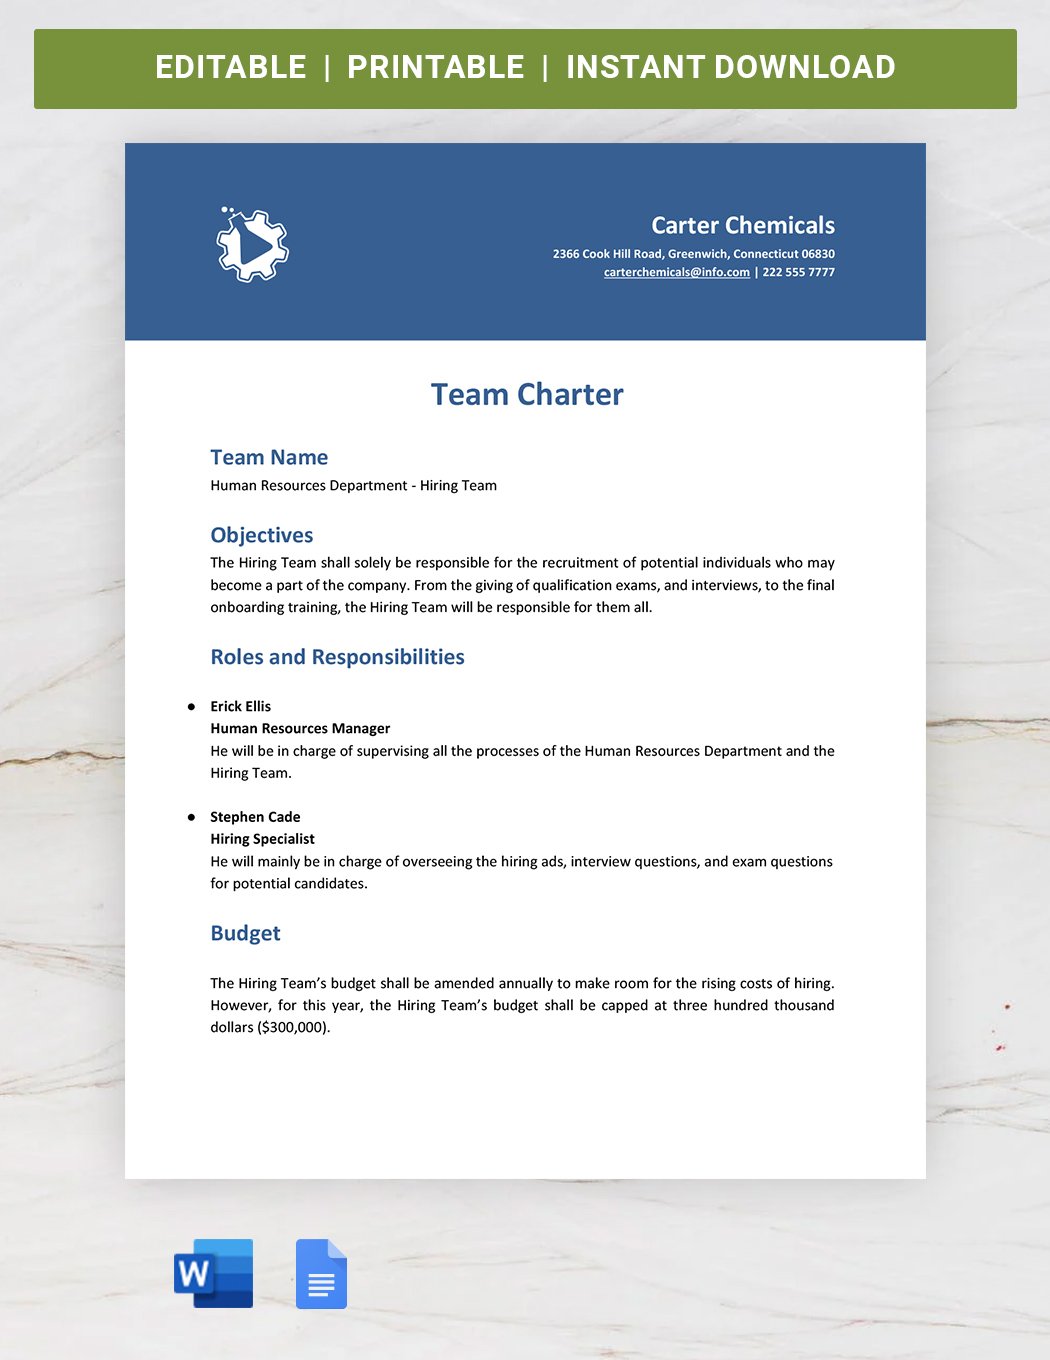 Business Team Charter Template